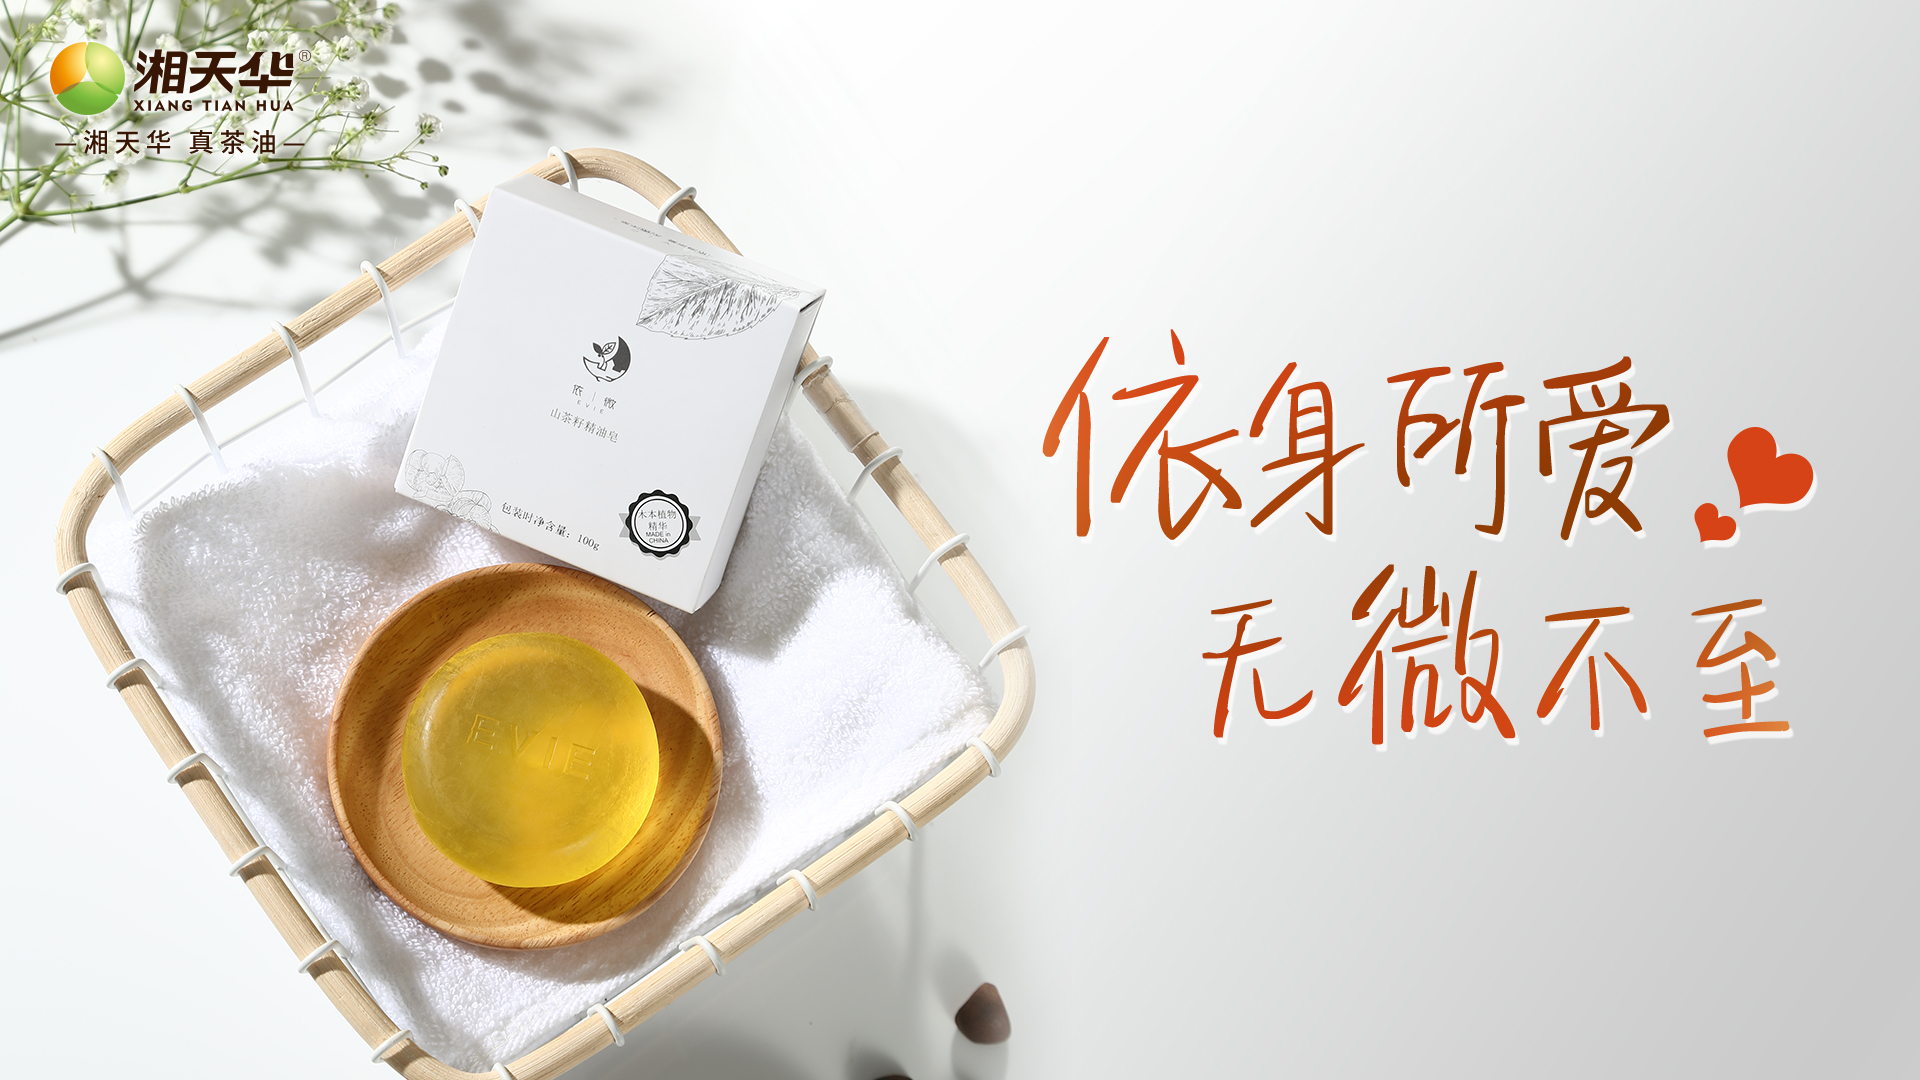 湖南天華油茶科技股份有限公司